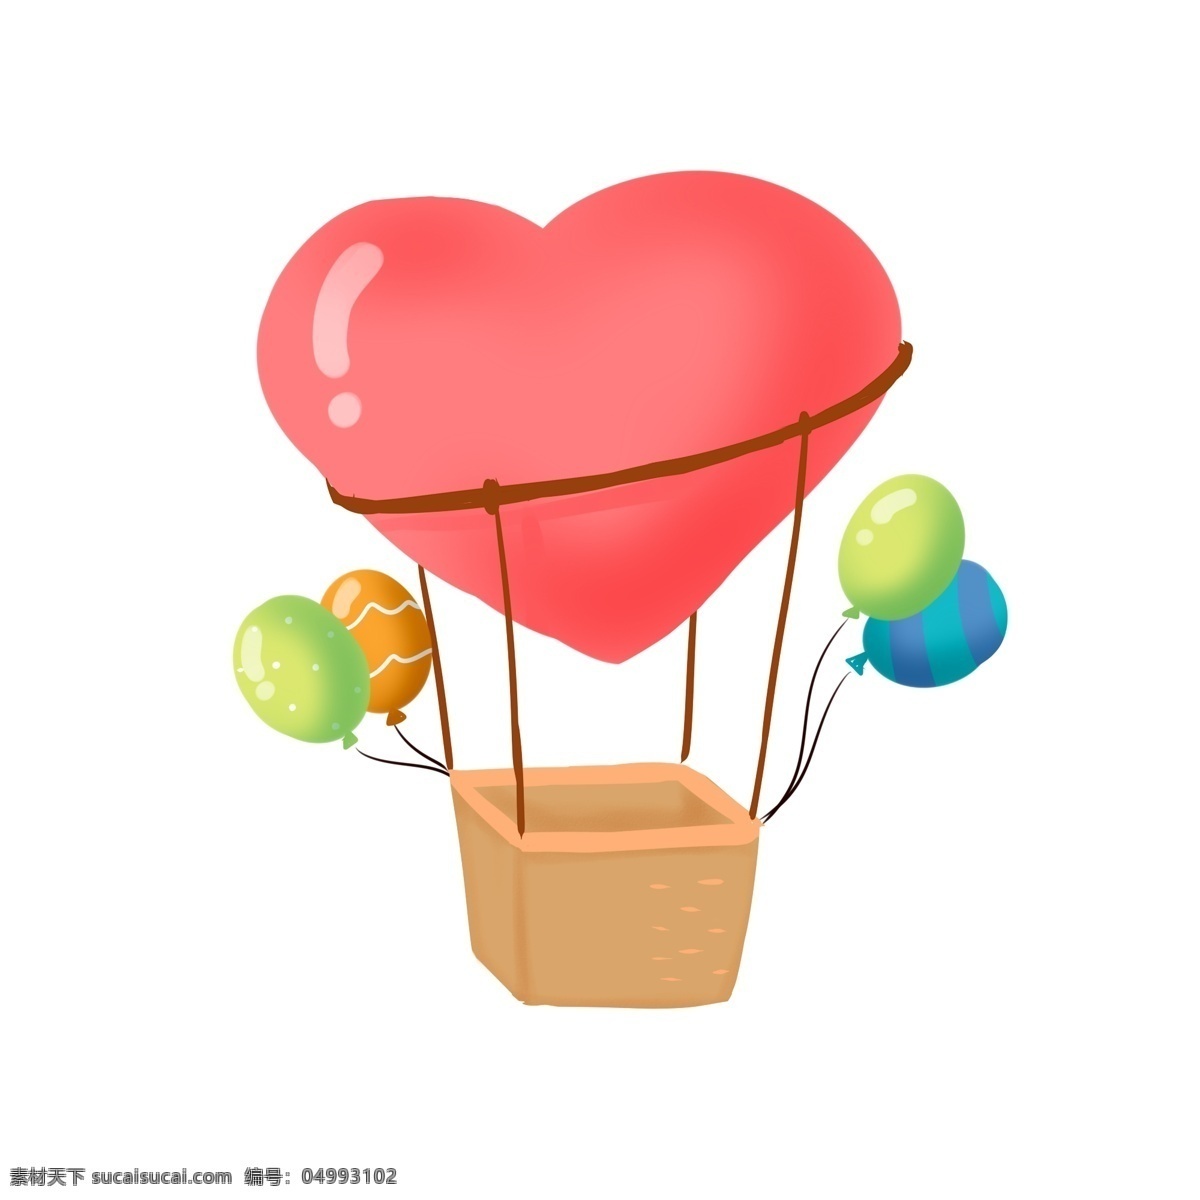 爱心 氢气球 手绘 插画 气球 心型 彩色 红色 气球蓝 卡通 可爱 清新 背景装饰